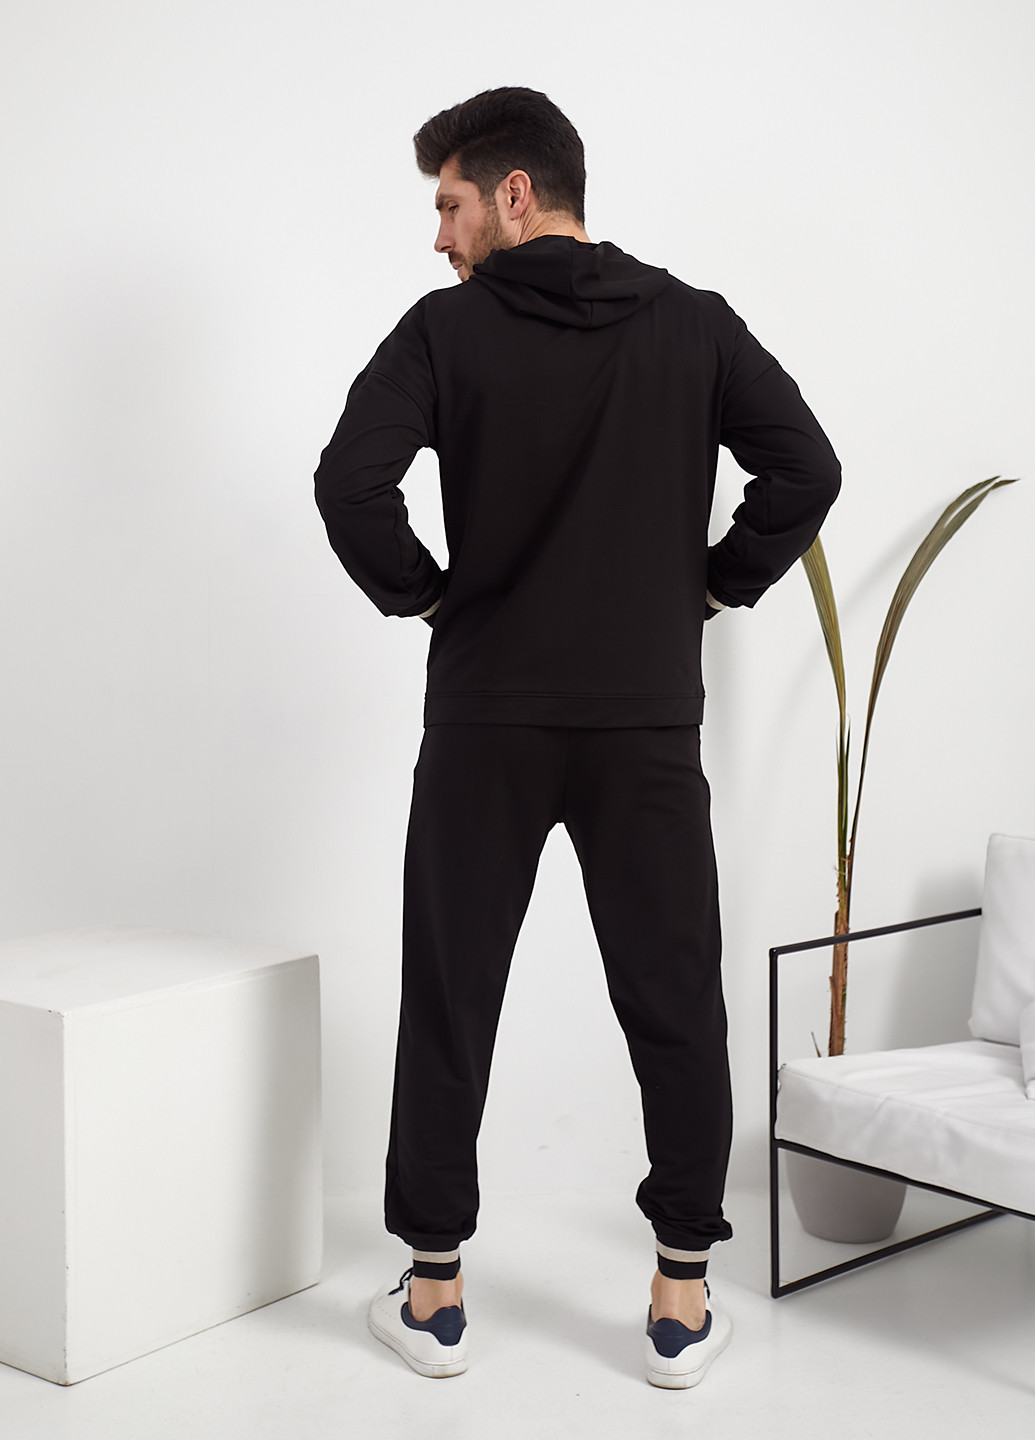 Спортивный костюм (толстовка, брюки) Demma однотонный чёрный спортивный хлопок, футер